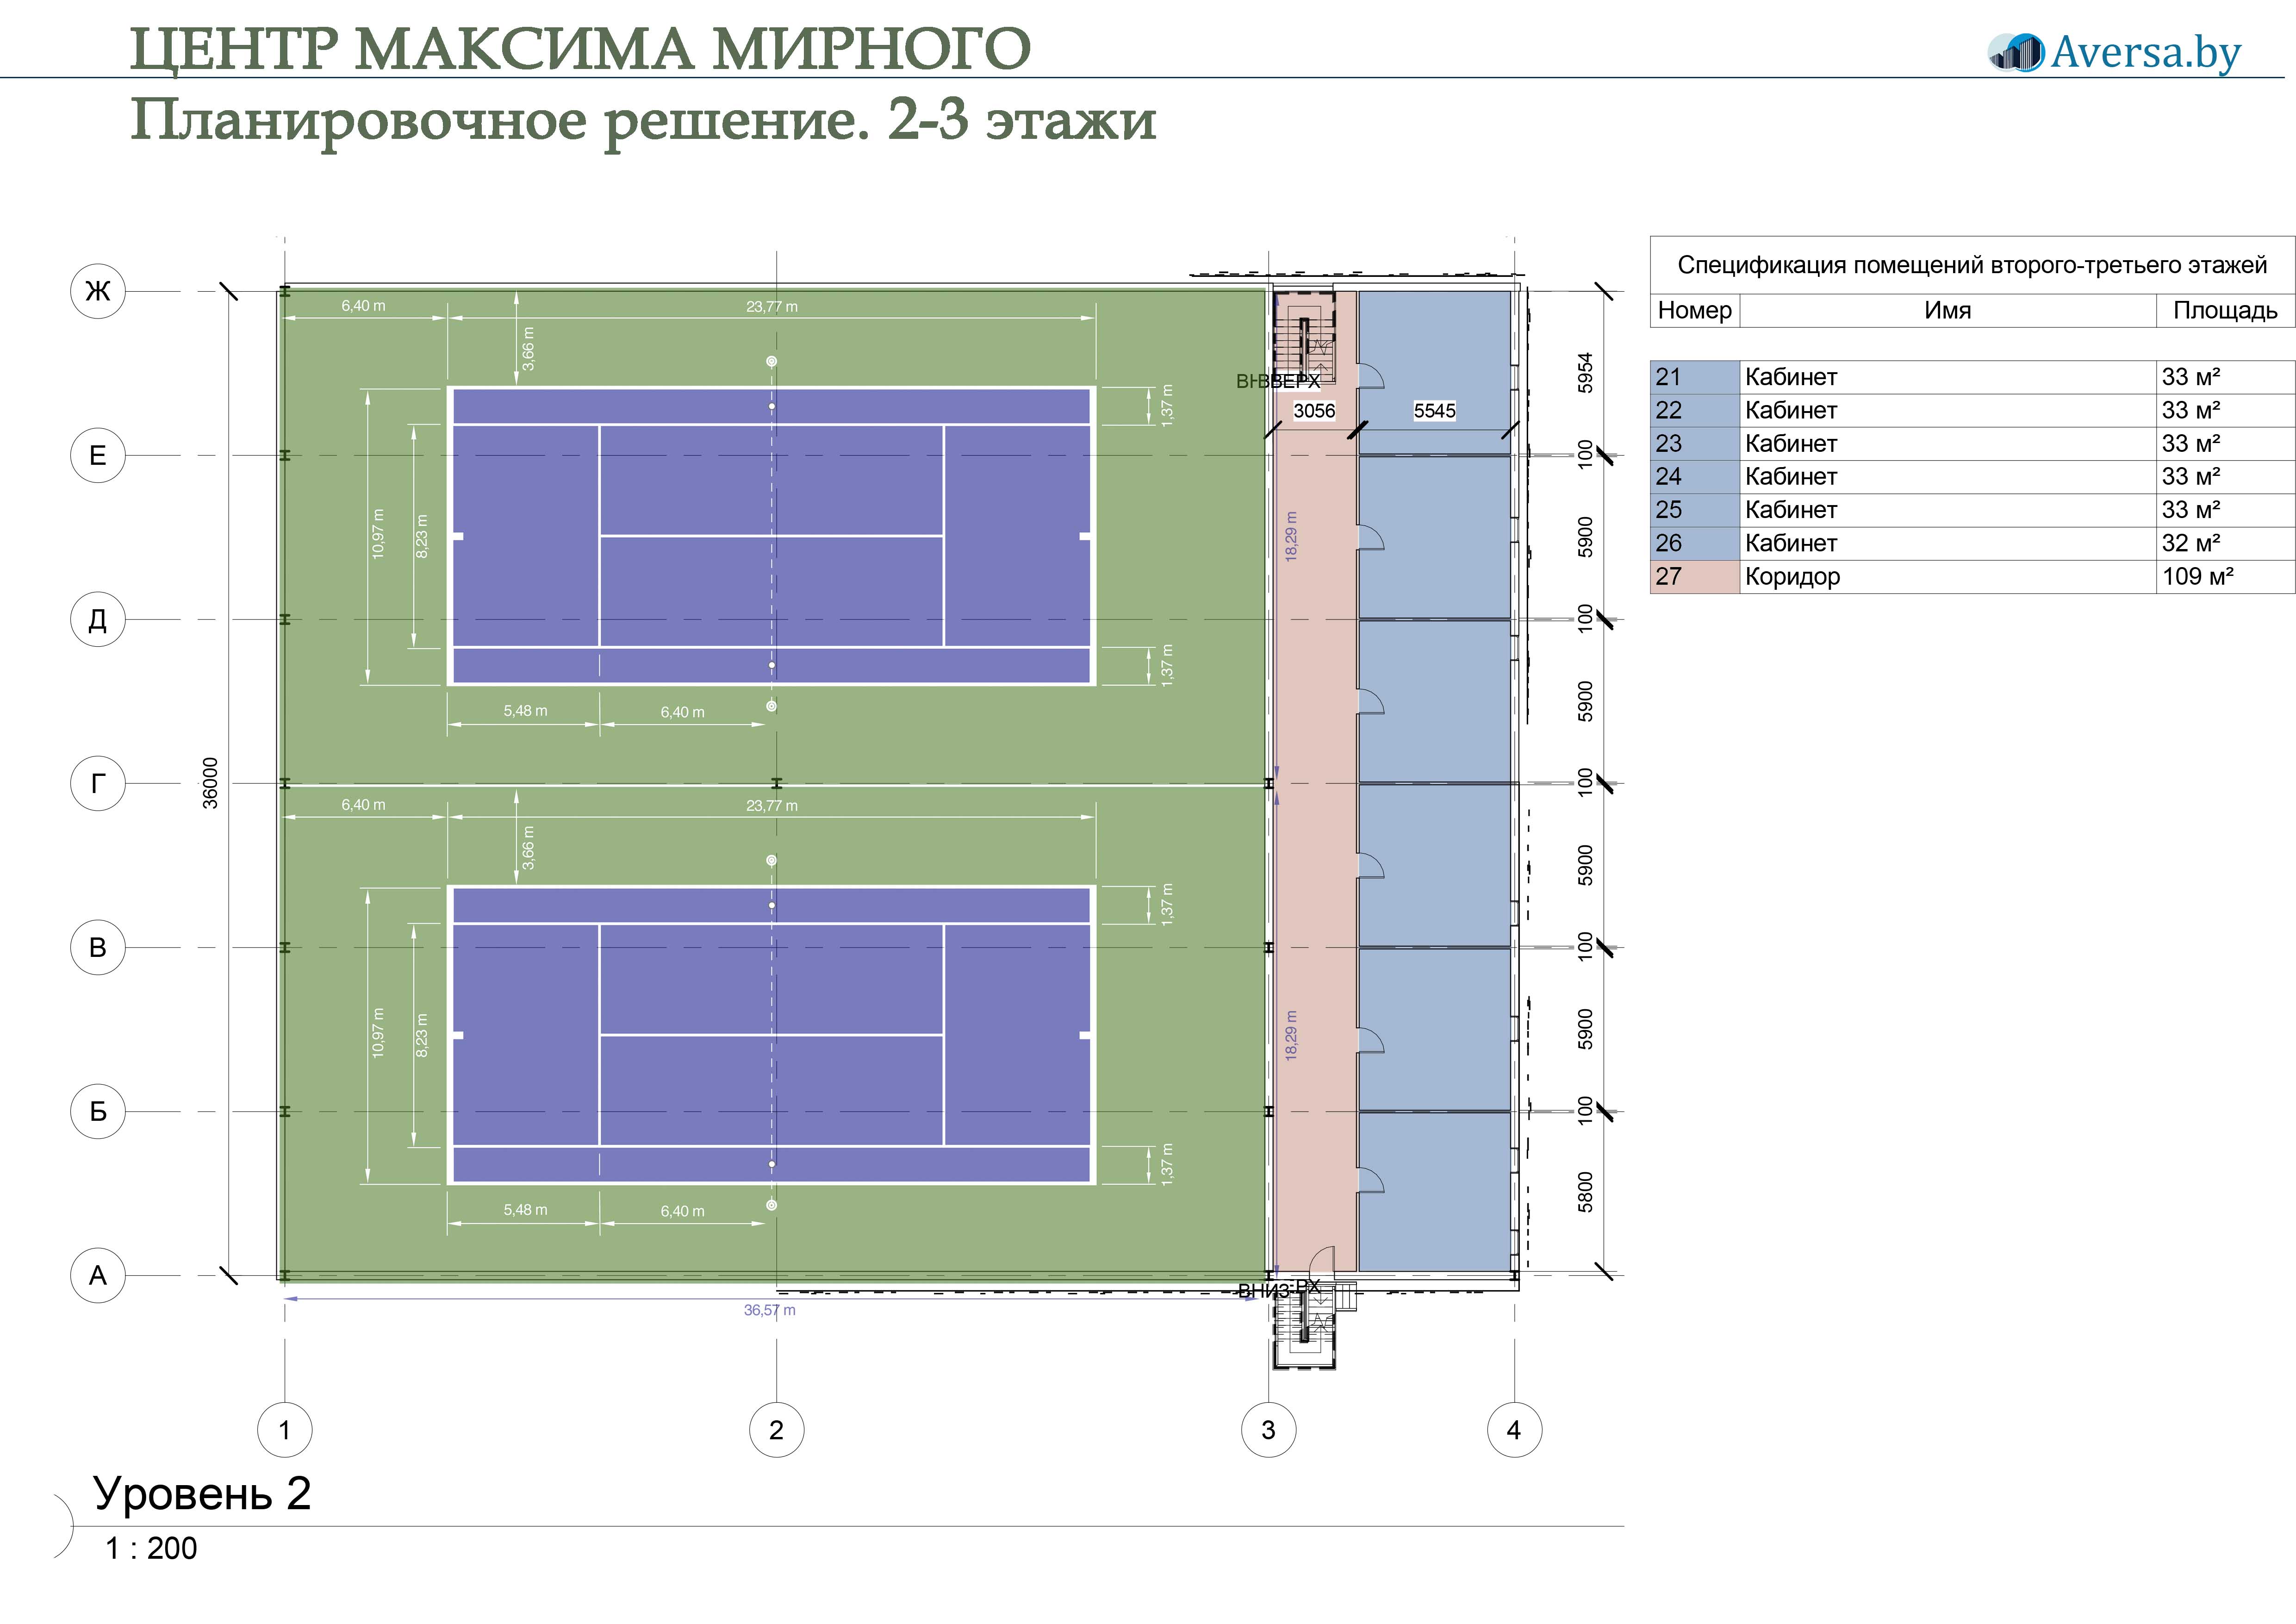 Max Mirnyi Center Центр Максима Мирного Теннисный центр 